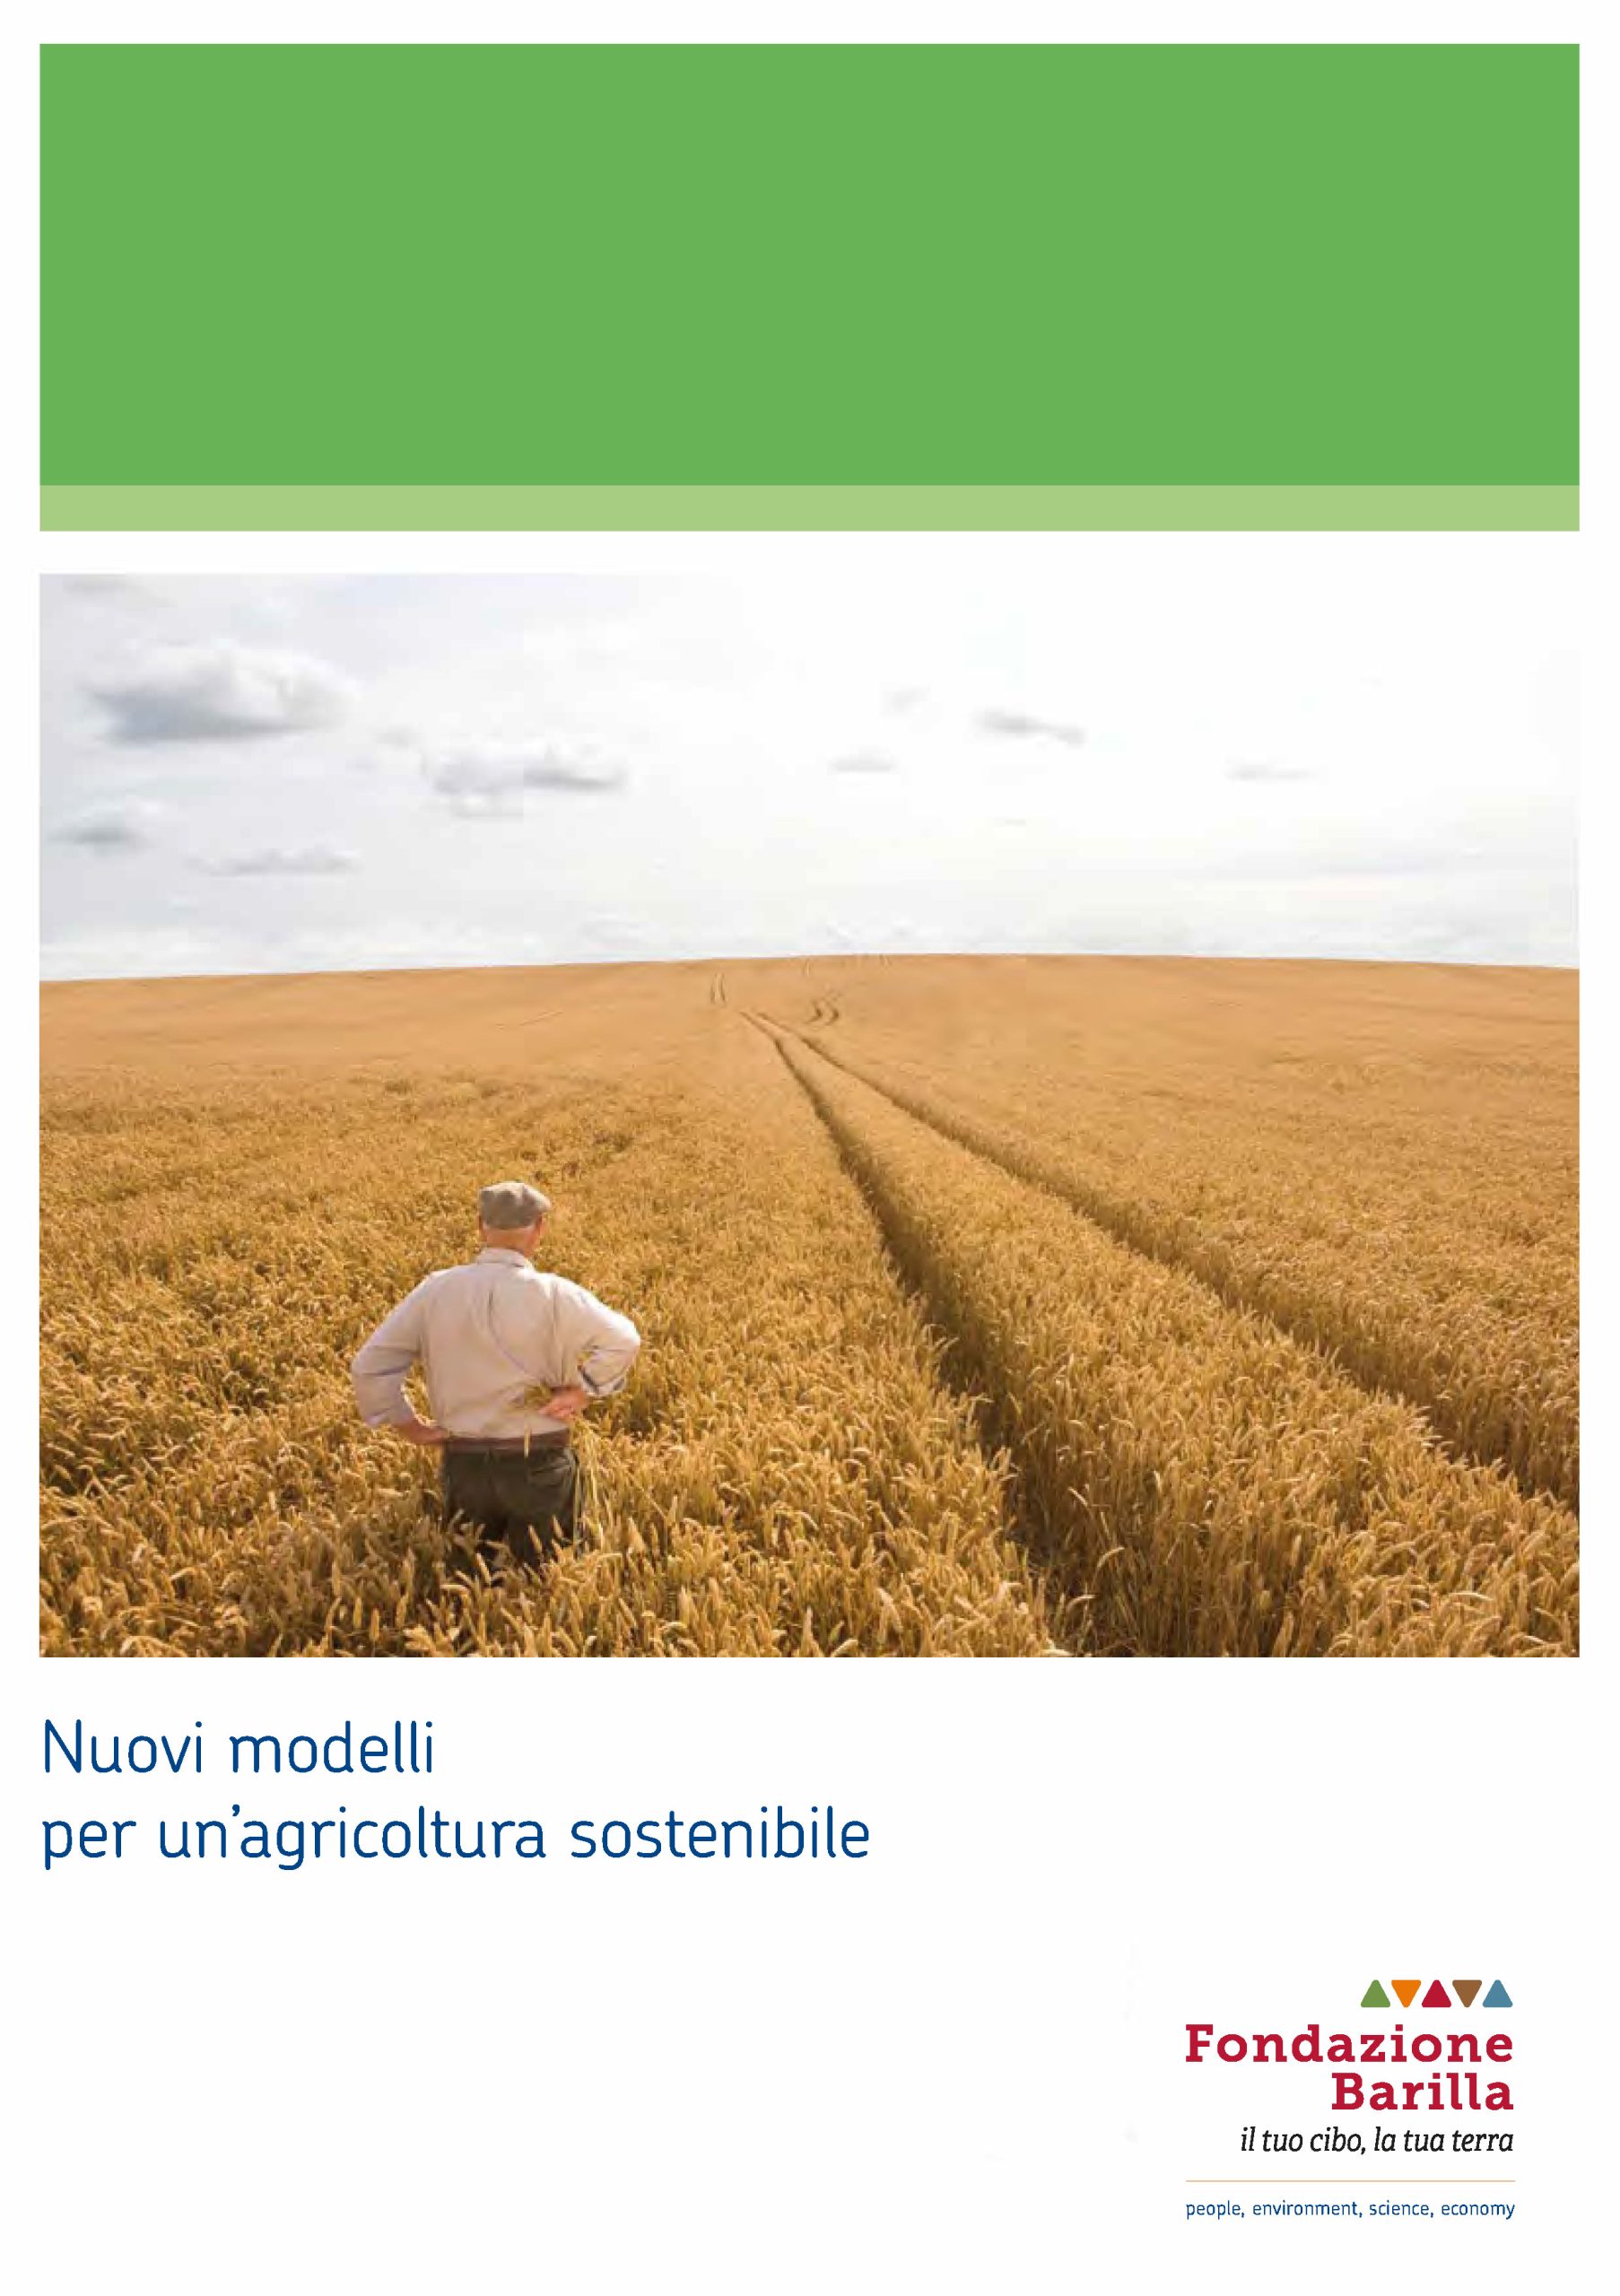 Nuovi modelli per un’agricoltura sostenibile